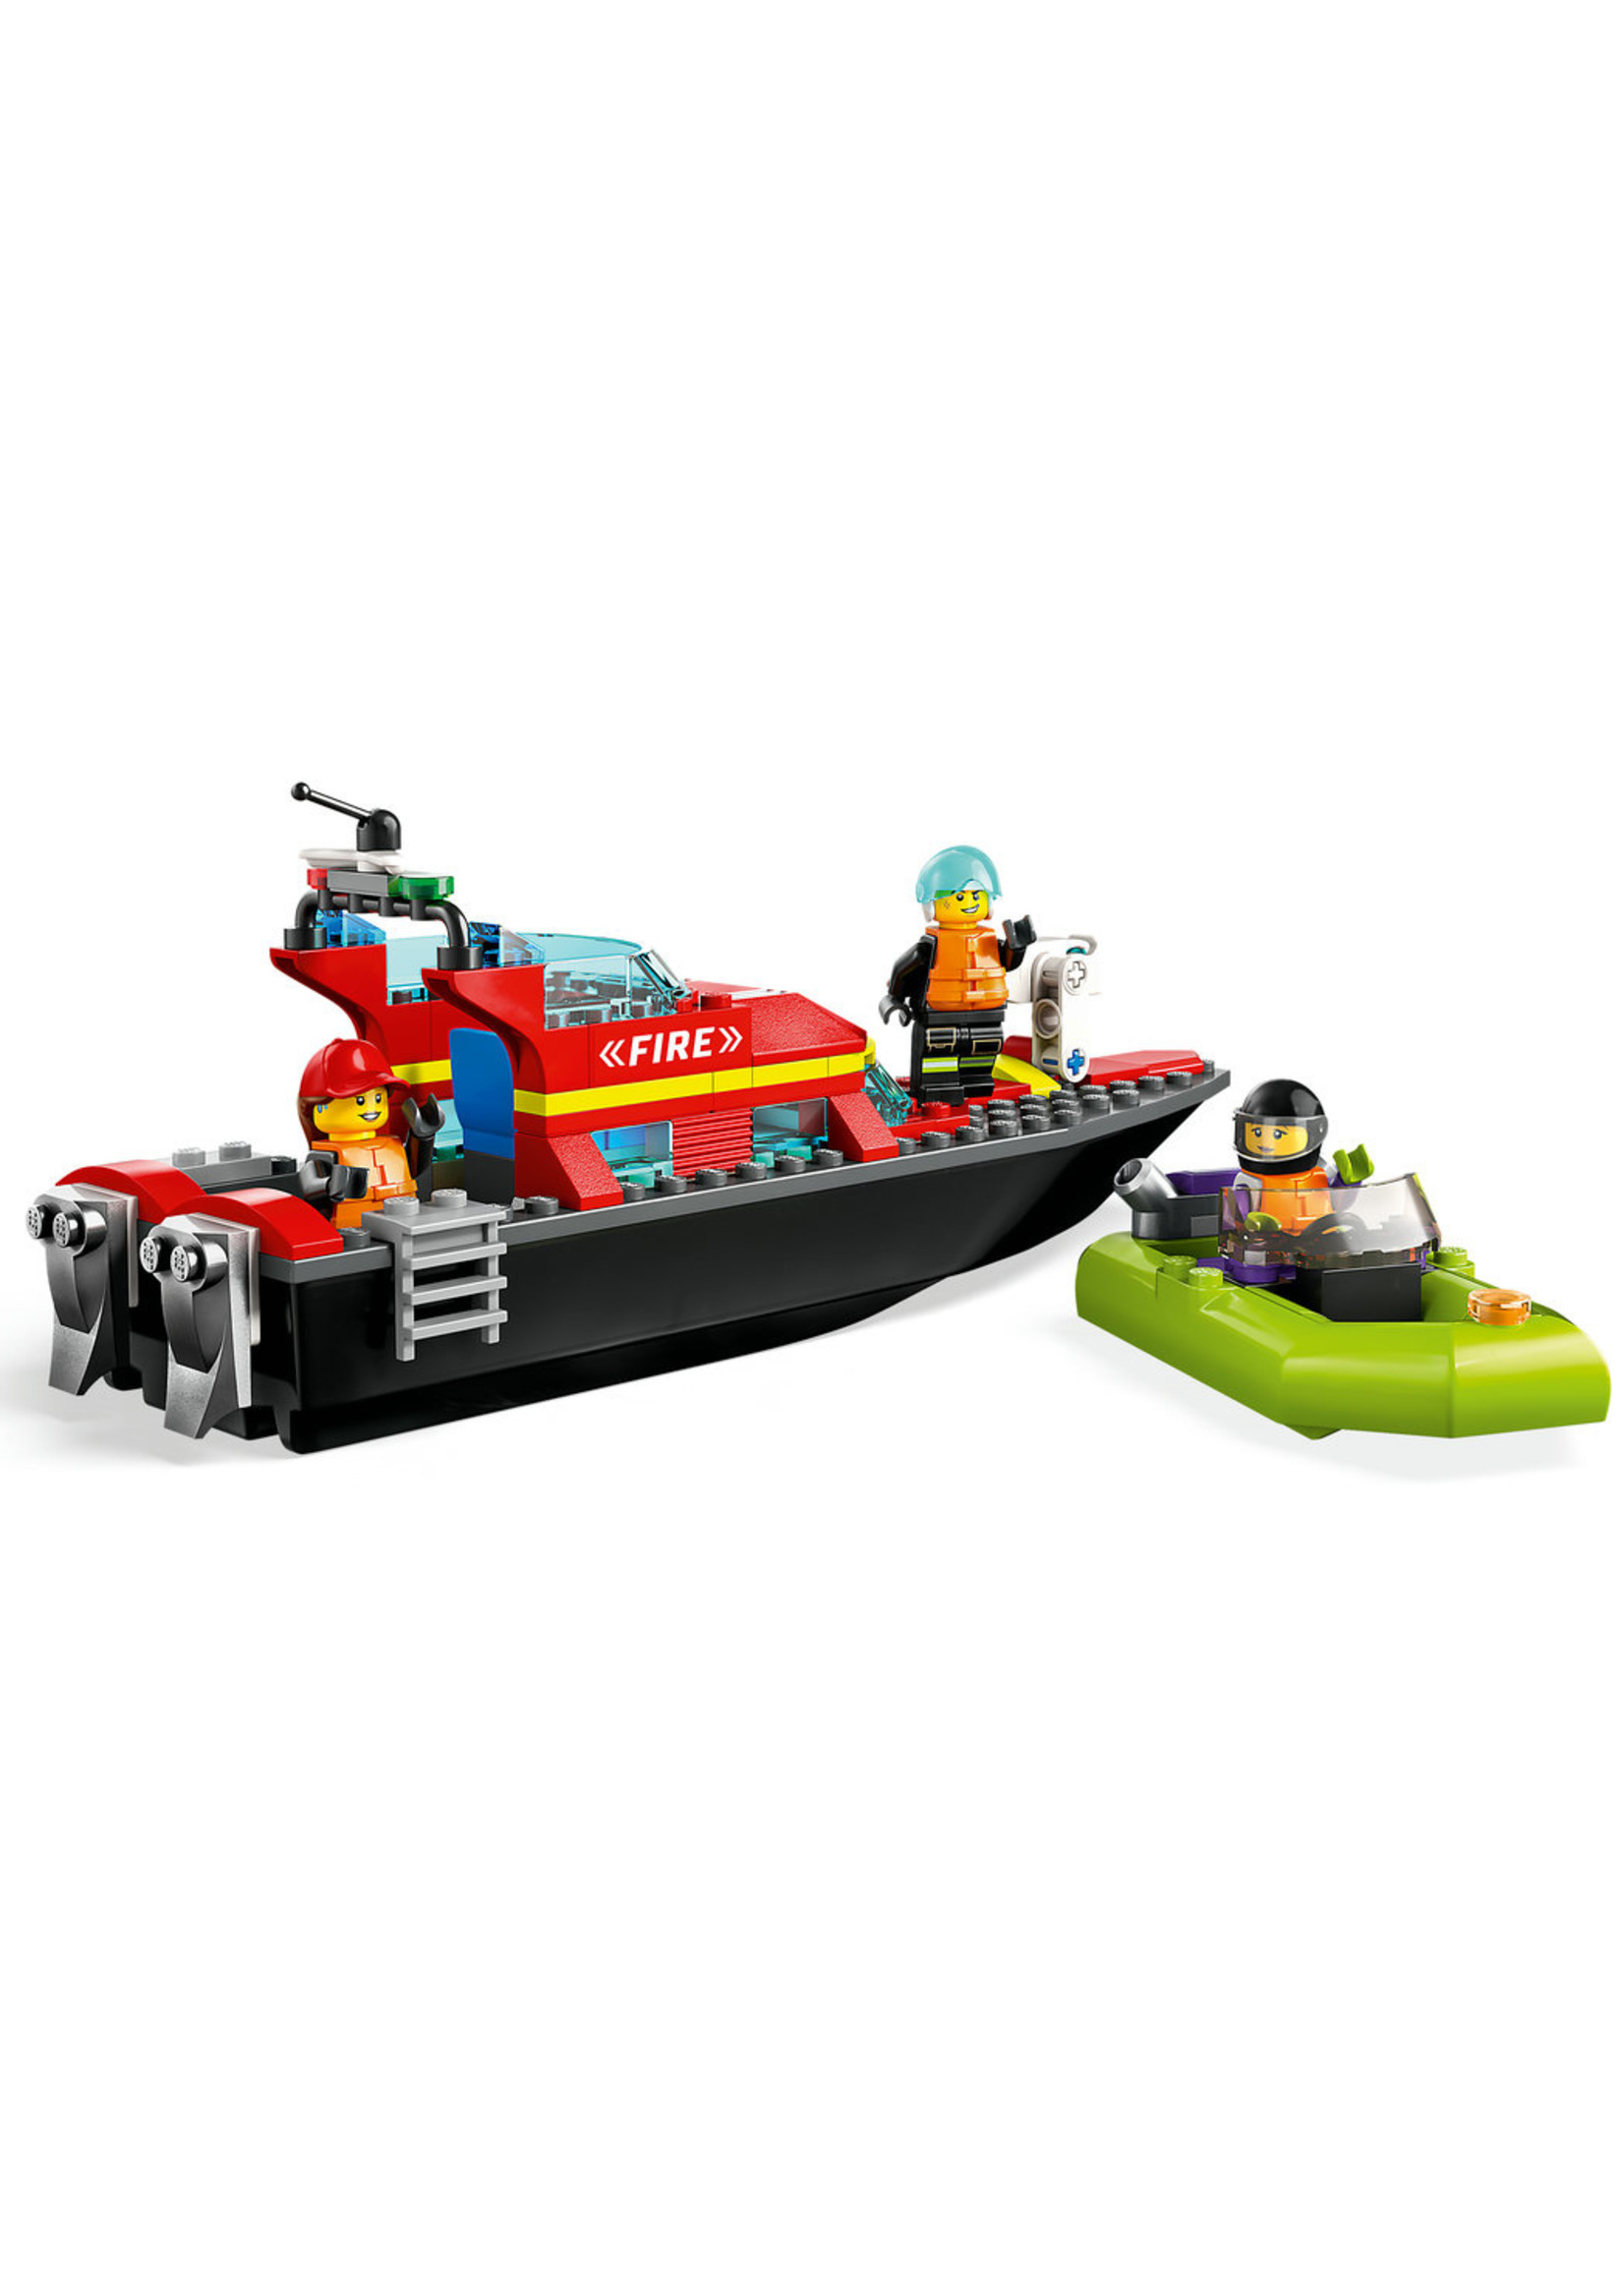 LEGO 60373 - Fire Rescue Boat